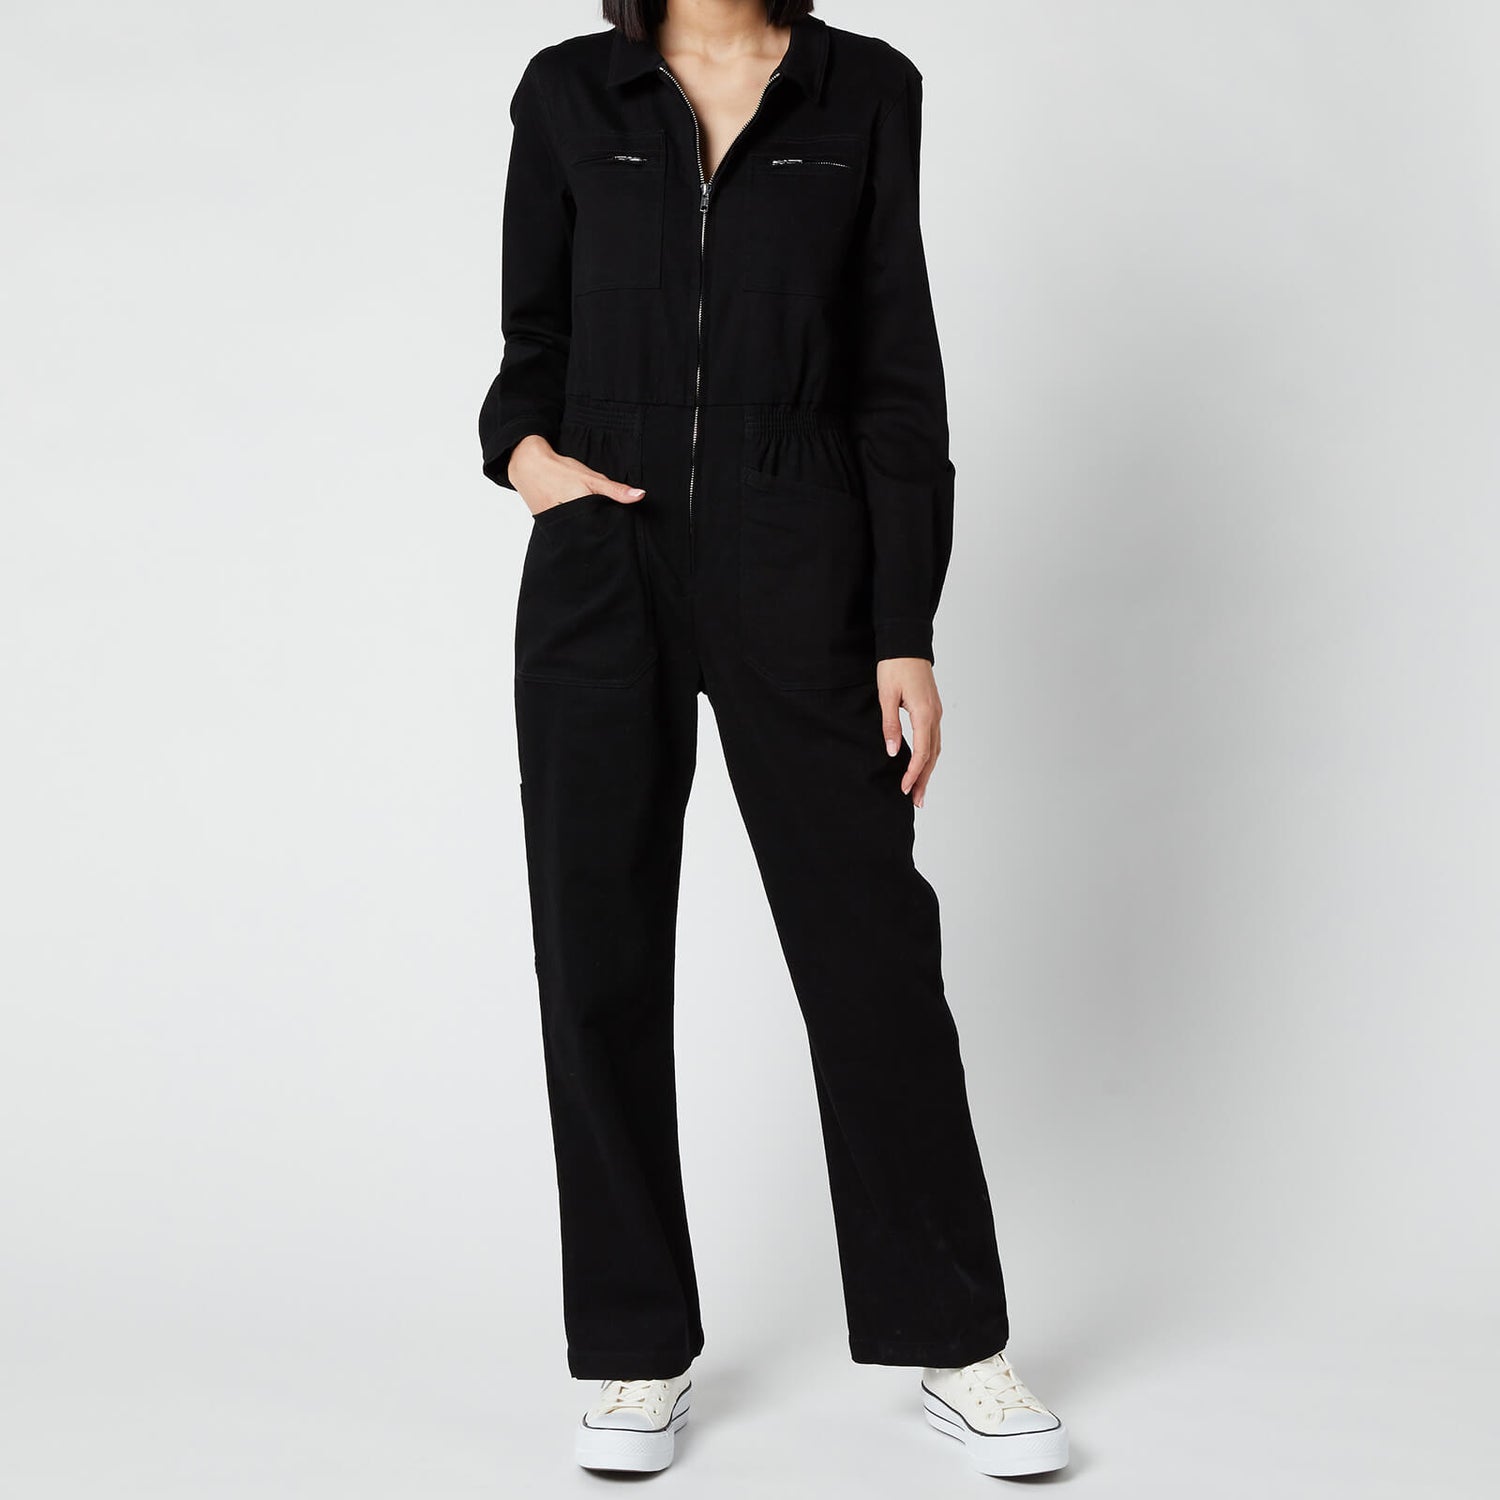 L.F Markey Women's Danny Longsleeve Boilersuit - Black